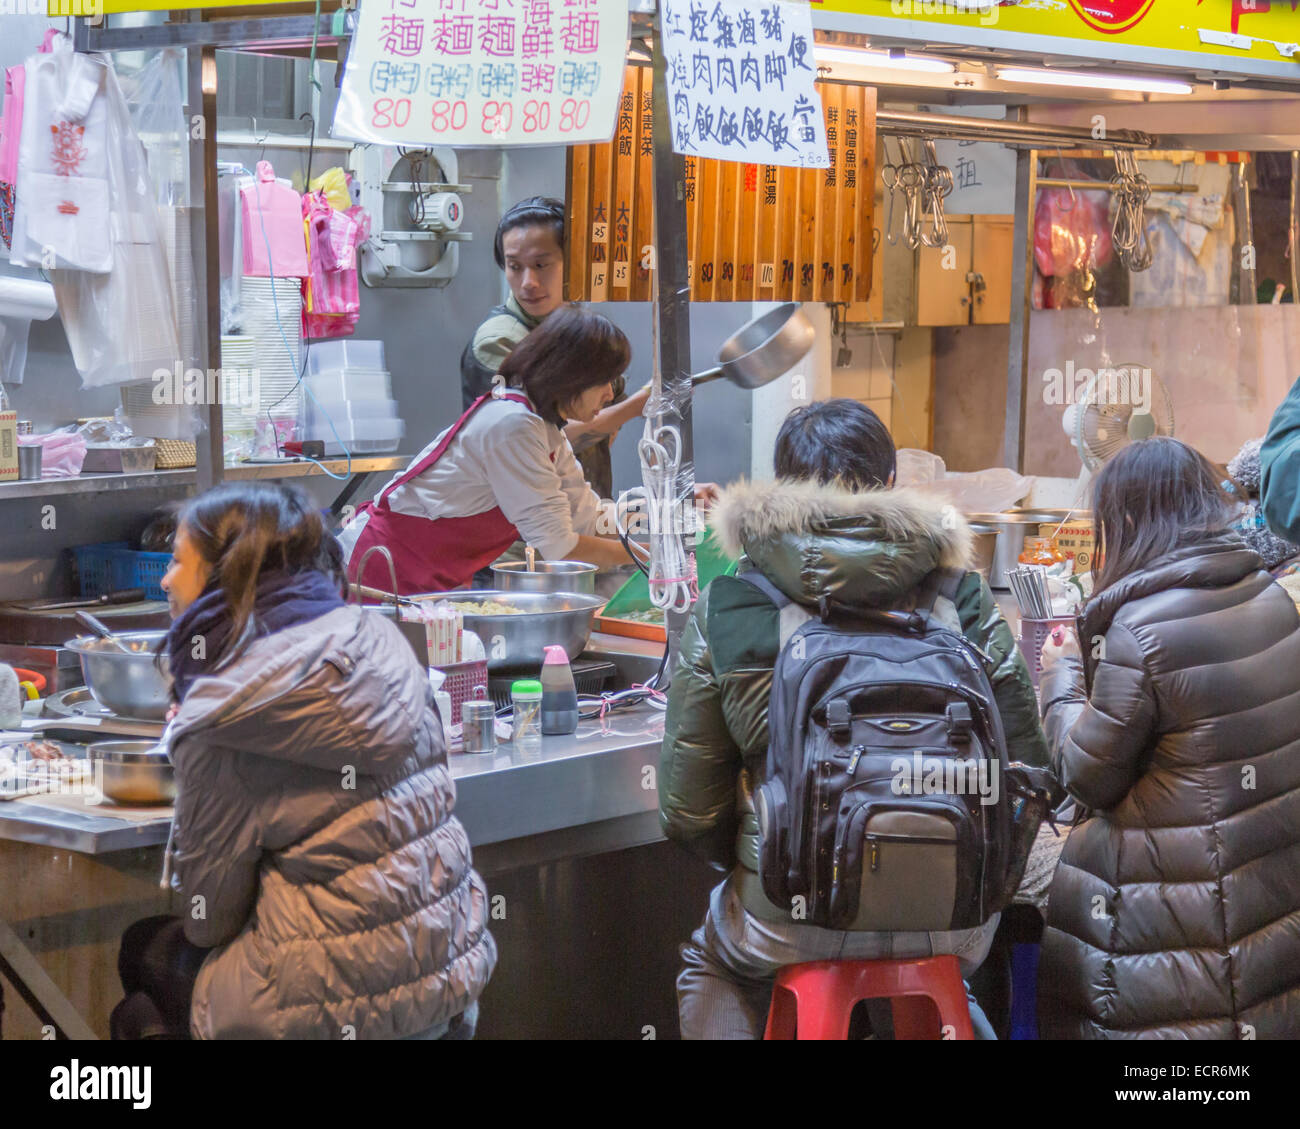 TAIPEI CITY, TAIPEI, TAIWAN. DECEMBER 17, 2014.  People eating at a vendor in Shida night market in Taipei City Stock Photo